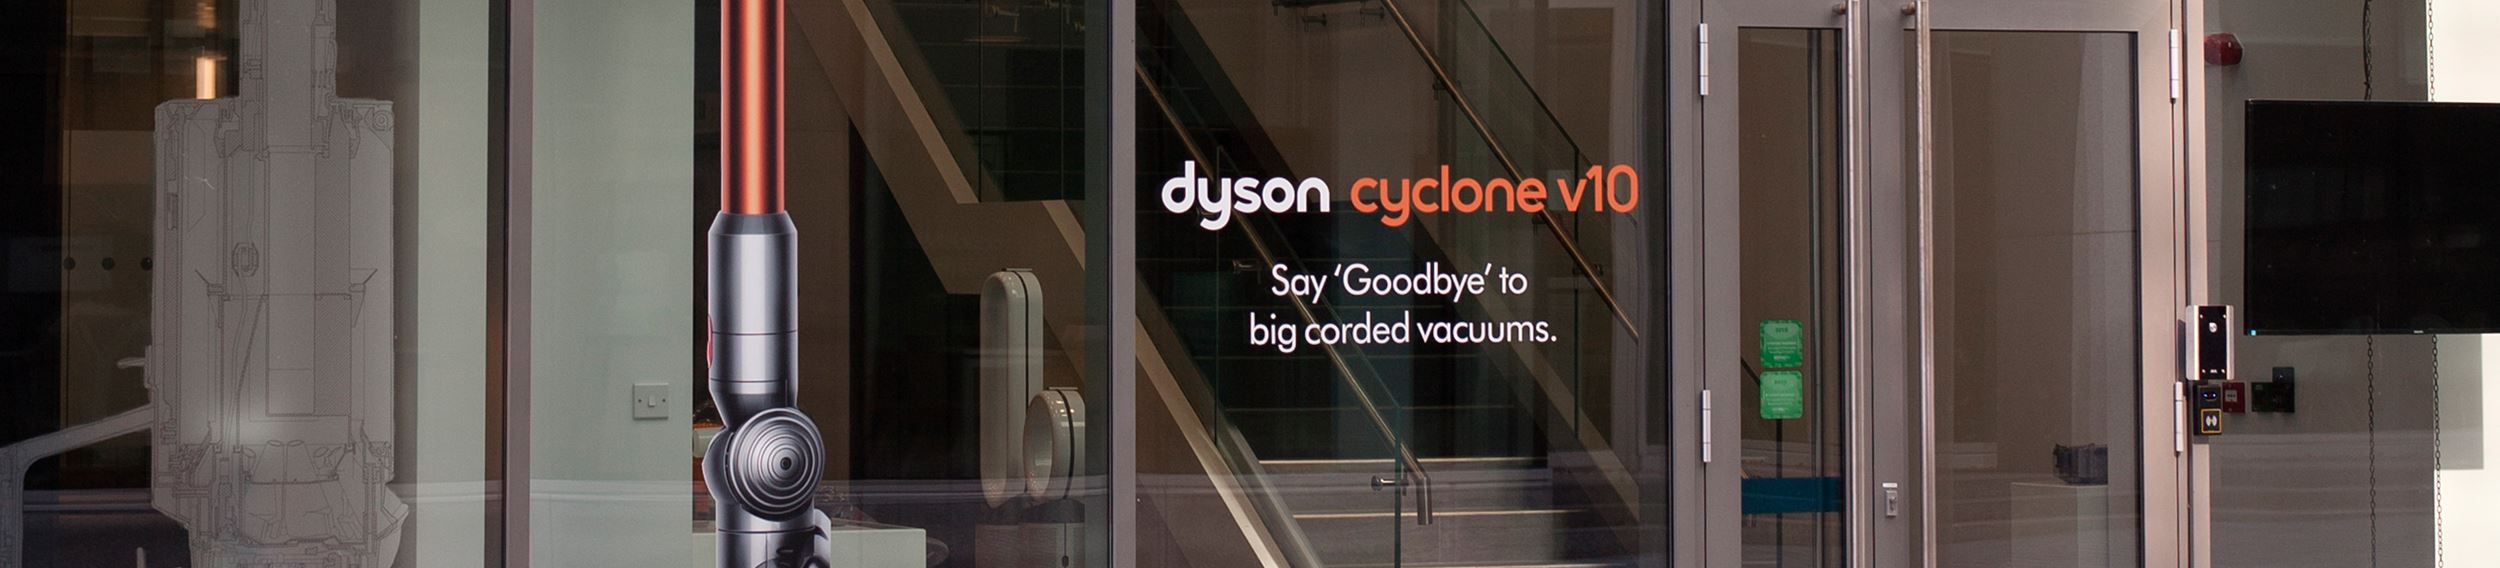 Dyson Ireland office